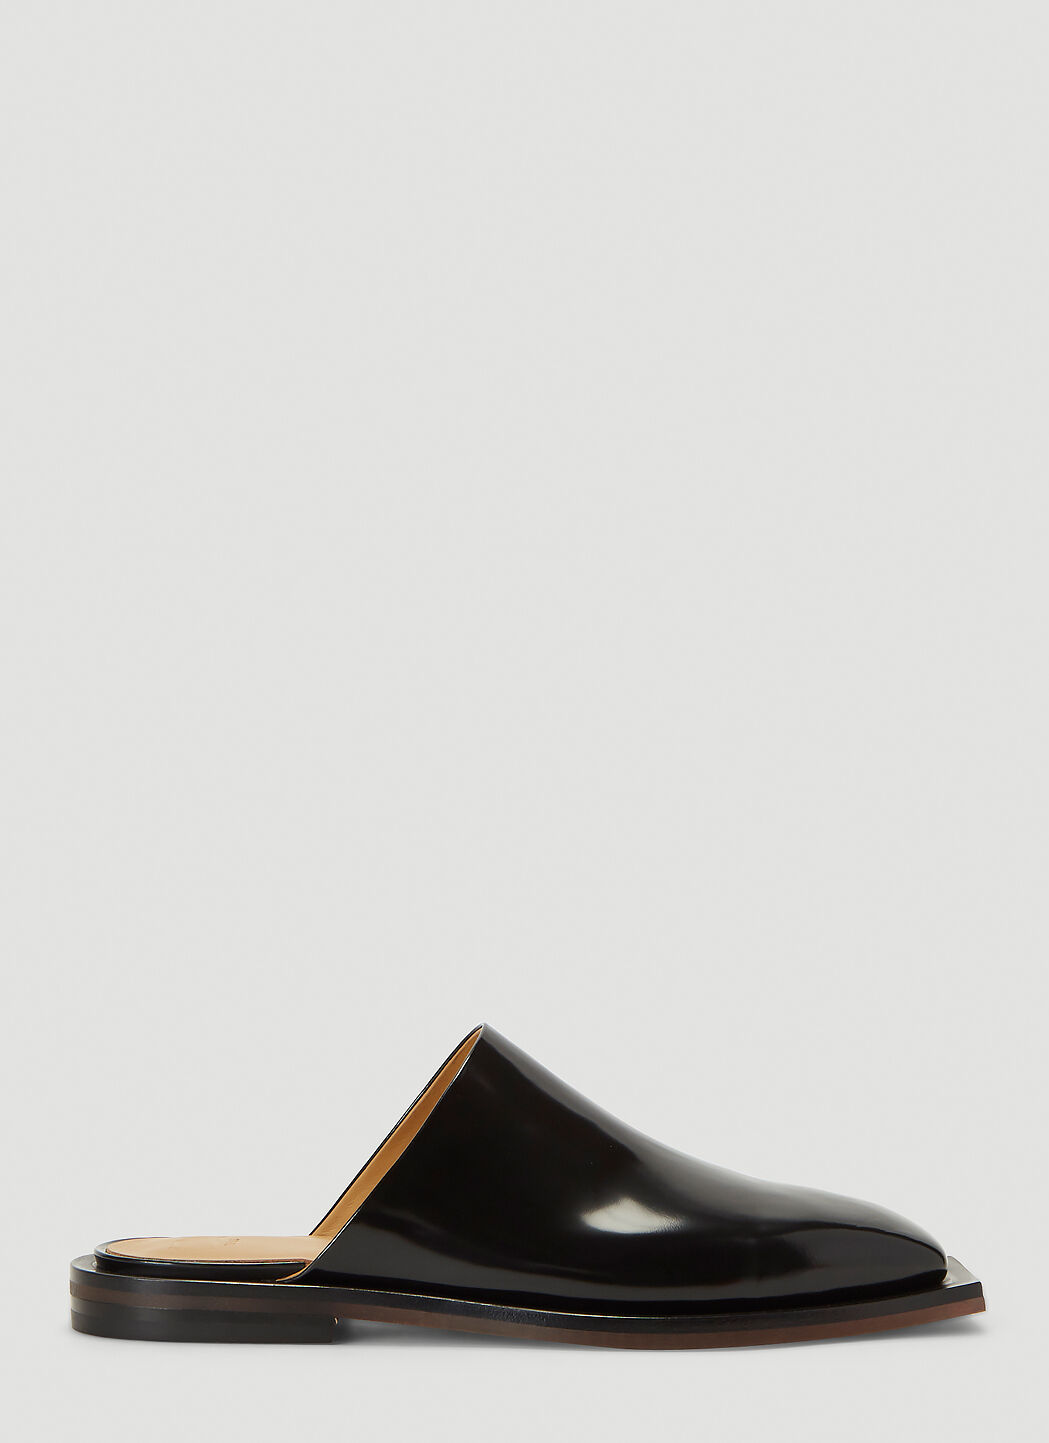 Maison Margiela Slip-On Leather Shoes 블랙 mla0140034